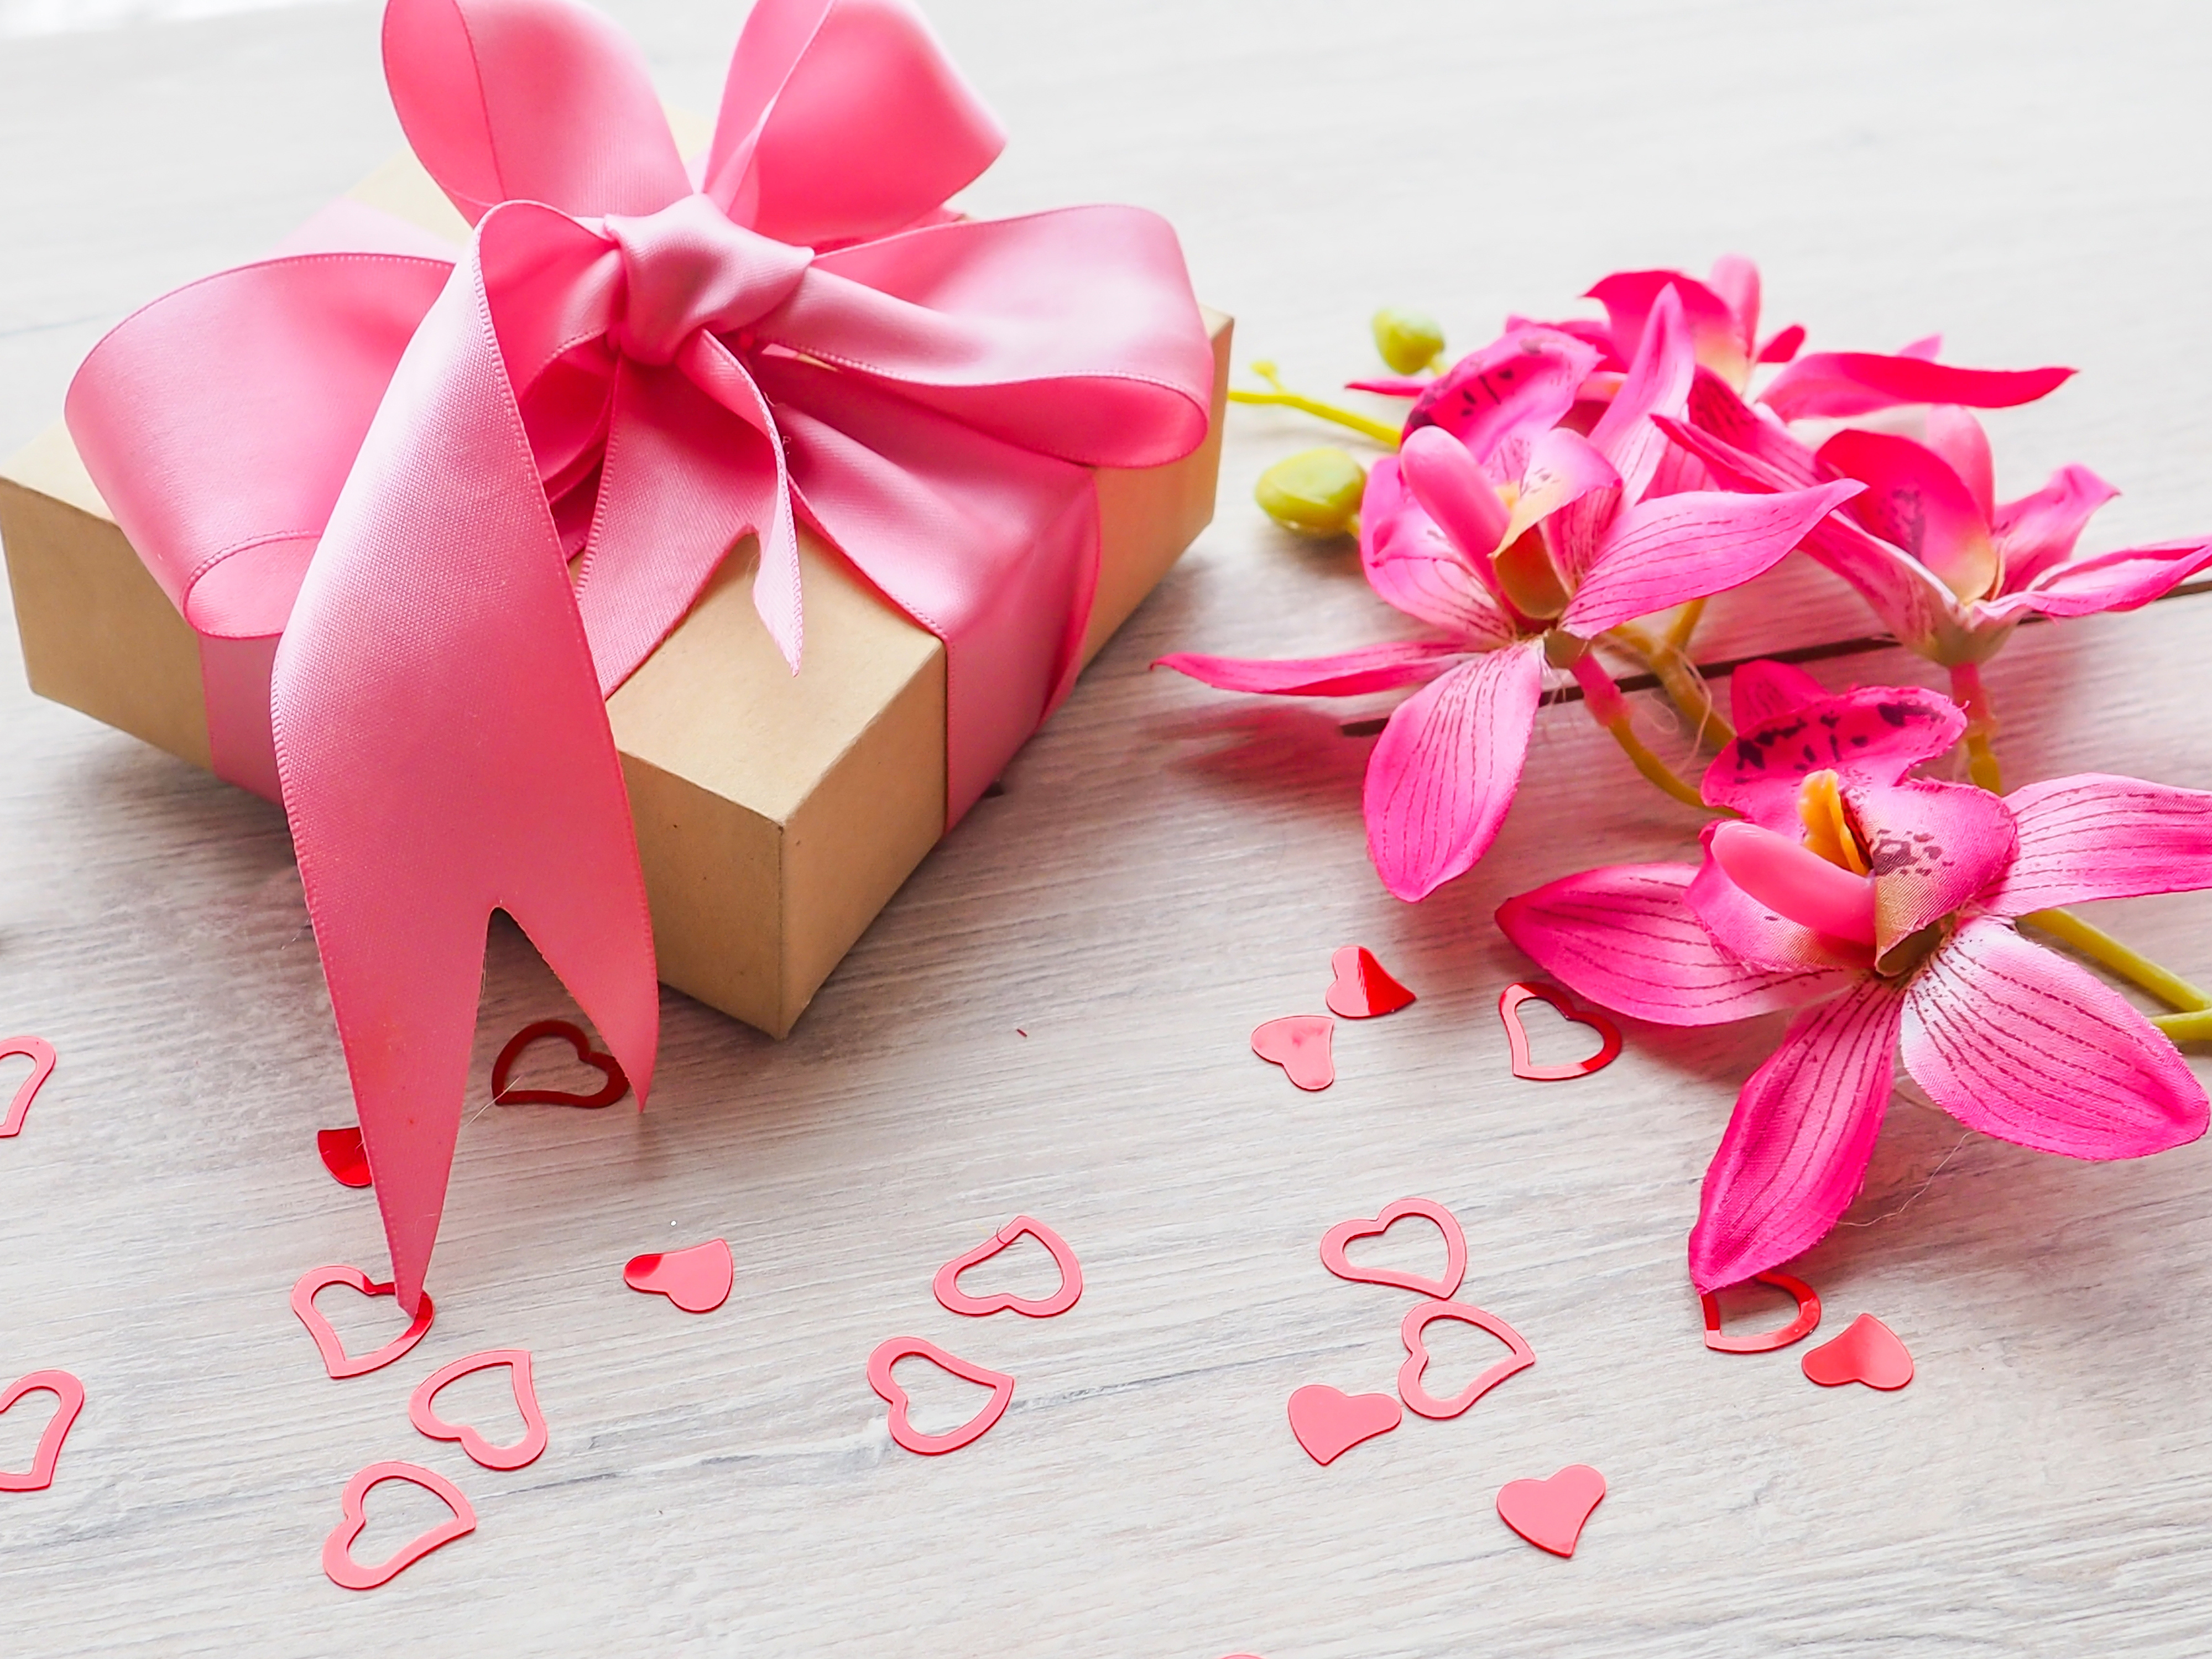 Скачать обои бесплатно Разное, Подарок, Сердце, Орхидея, Розовый Цветок, Романтический картинка на рабочий стол ПК